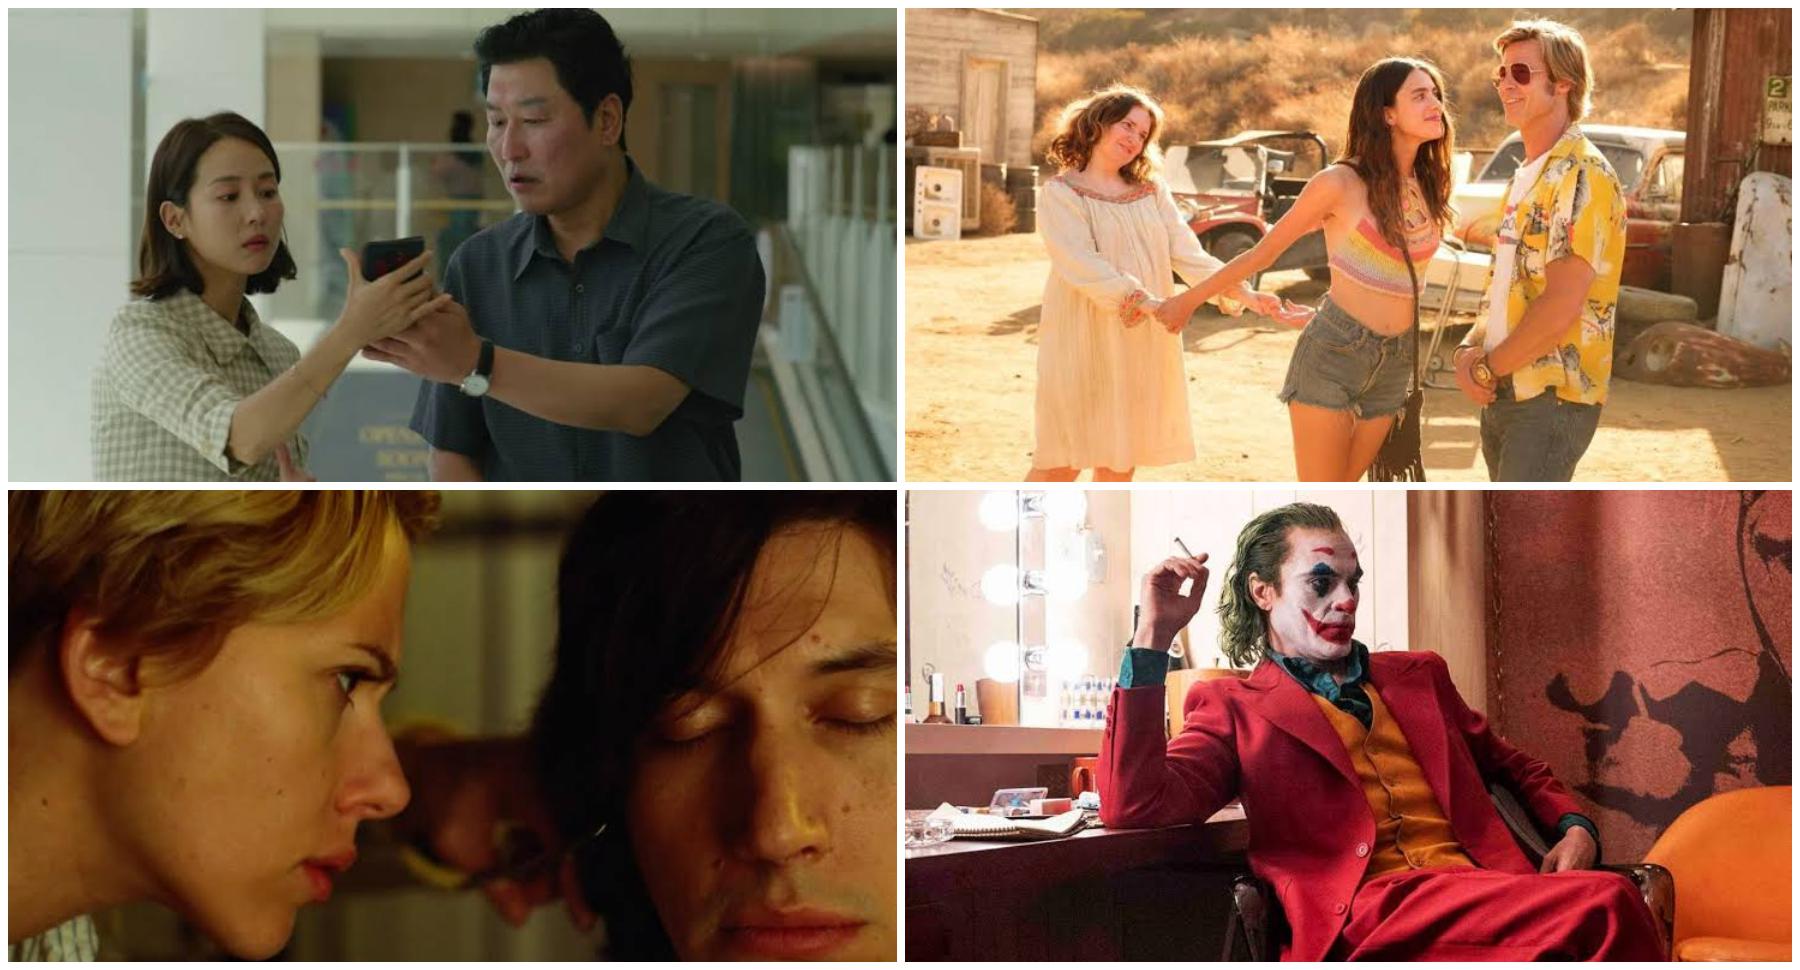 Este lunes 13 de enero se conocieron las nueve películas nominadas al Oscar como mejor producción del año. Te mostramos, de menor a mayor, con cuánto presupuesto contaron estas películas.